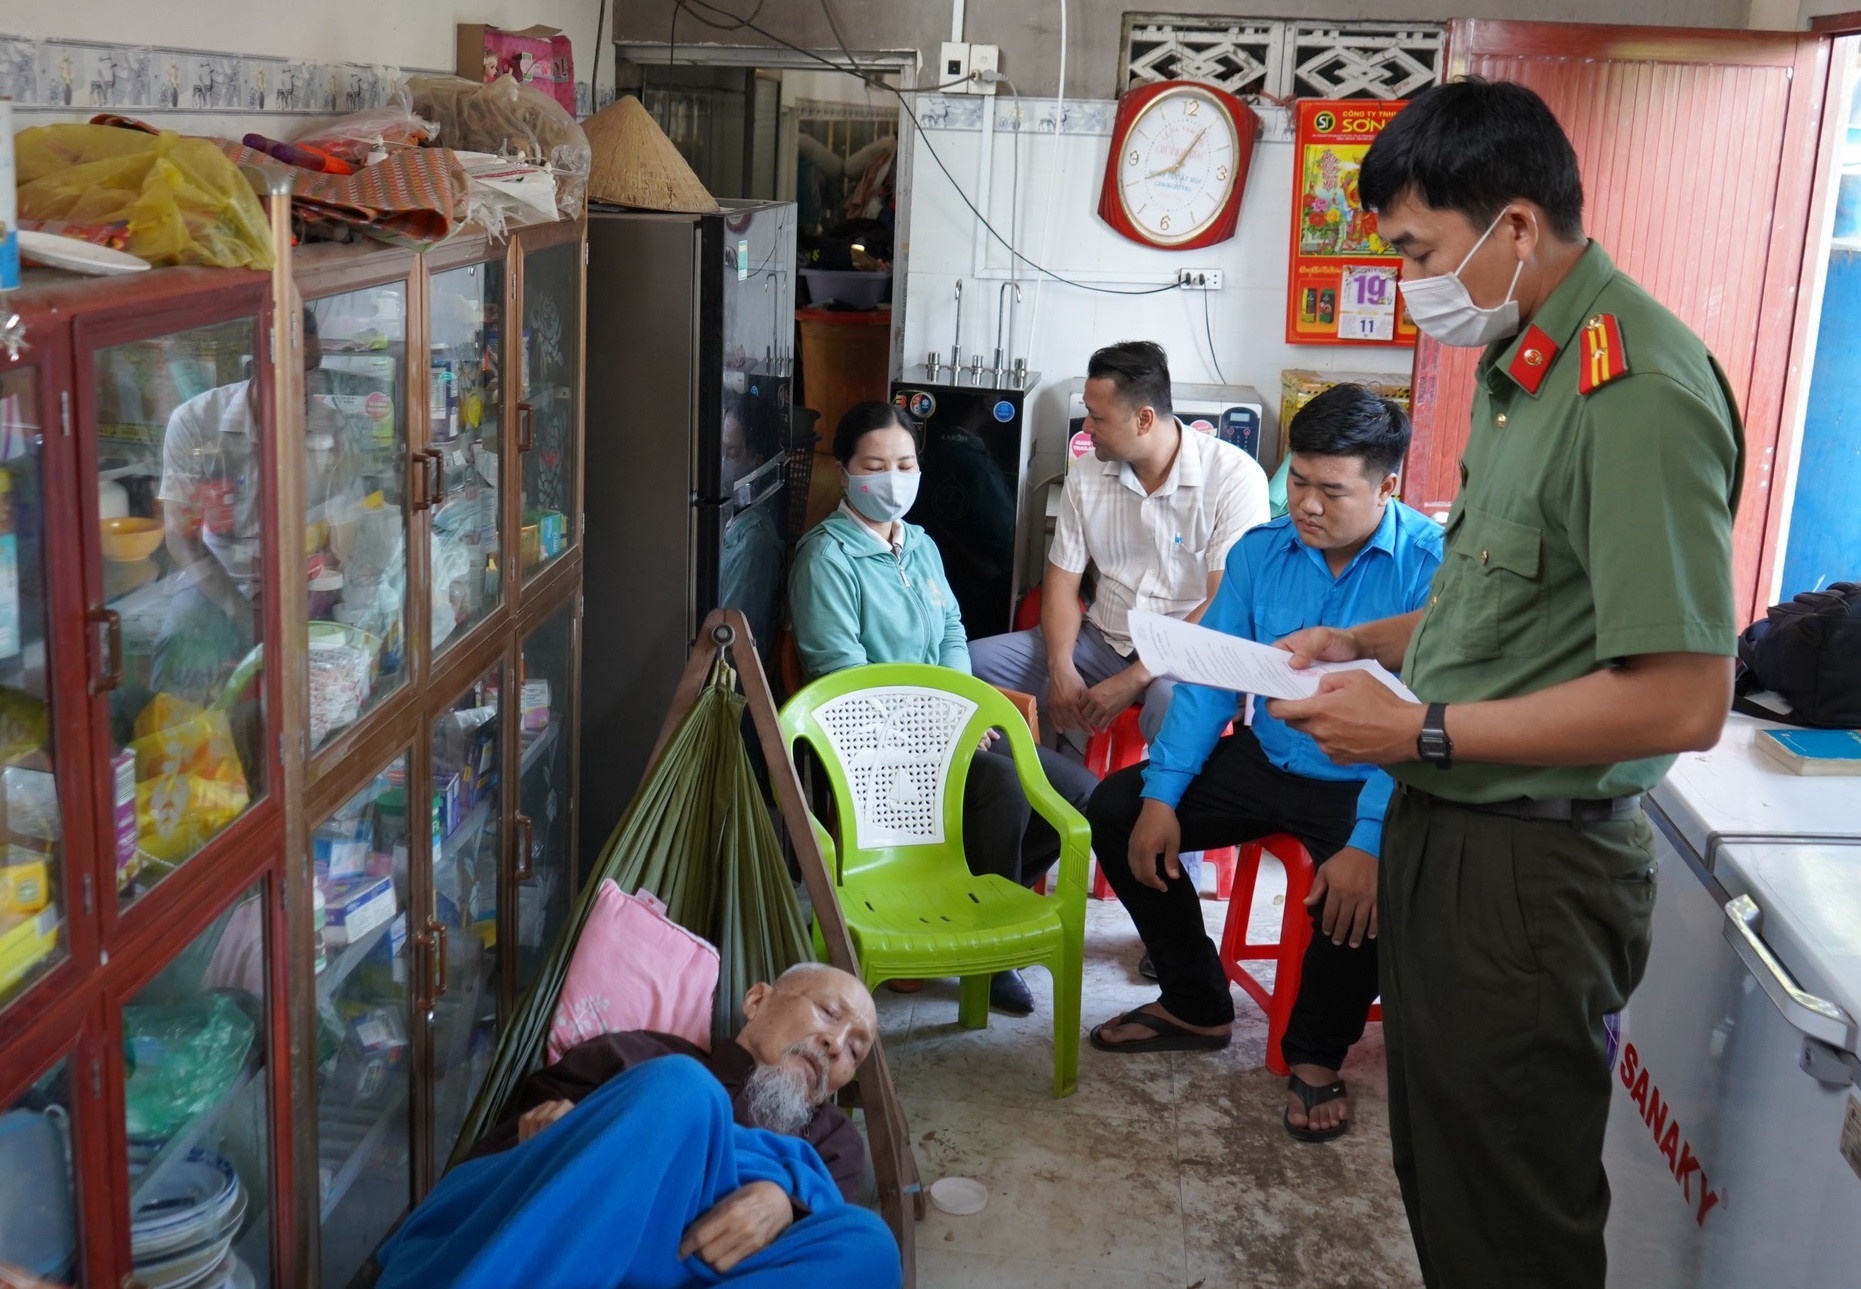 Nóng: Công an truy tìm người liên quan vụ án loạn luân ở 'Tịnh thất Bồng Lai' - Ảnh 2